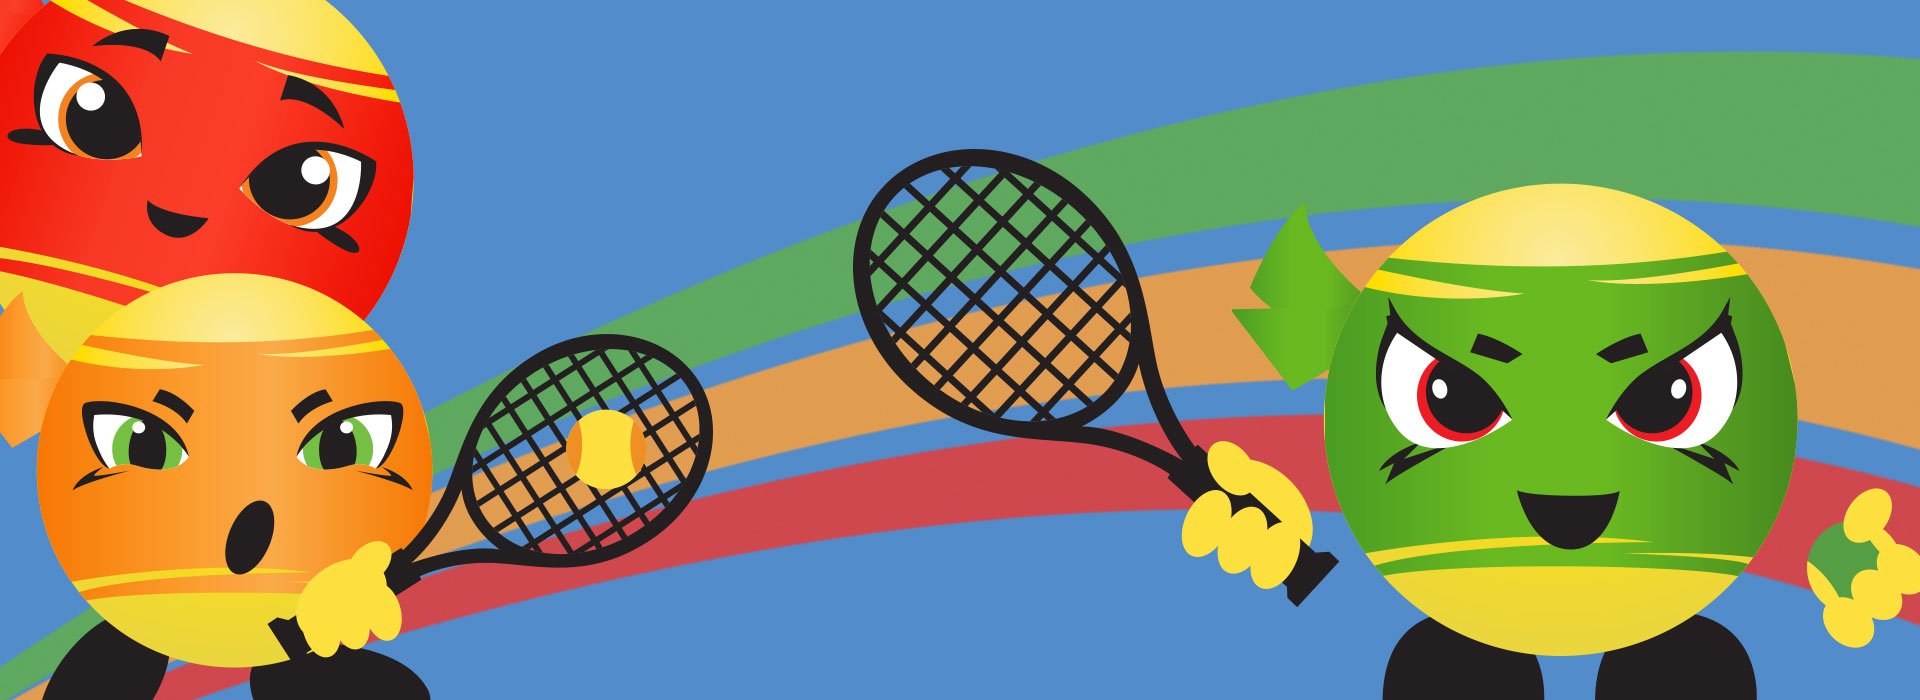 Você conhece os tipos de torneios de tênis que existem?, by Woby Play